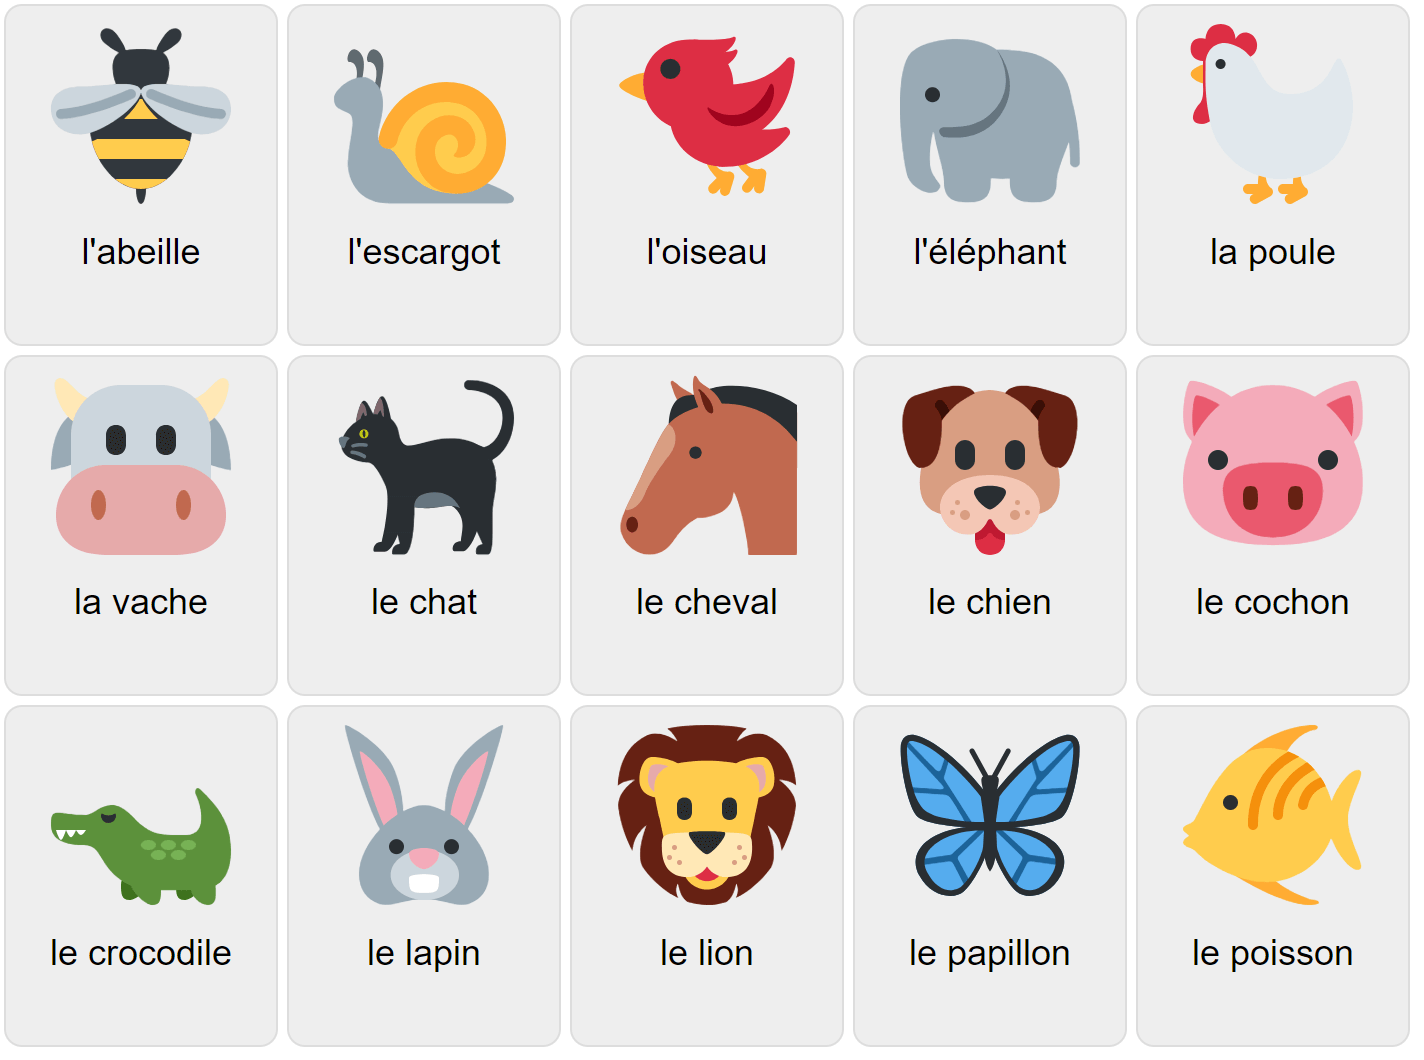 Djur på franska